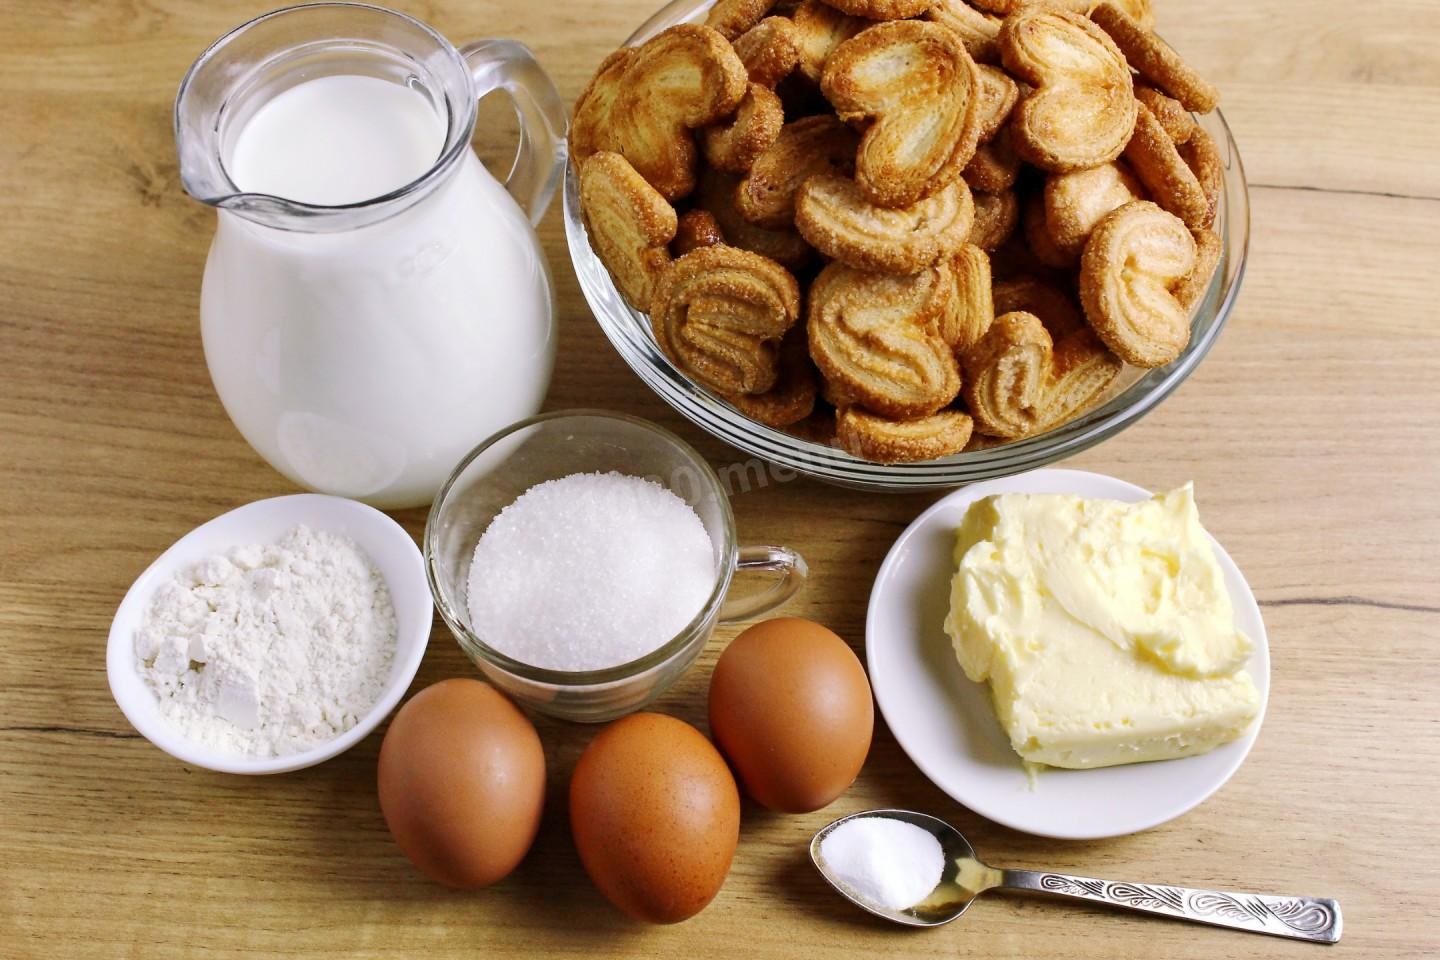 Кефир 1 яйцо мука сахар. Печения из муки и молока и яиц. Пирог с молоком. Наполеон из печенья ушки. Масленица мука молоко яйца масло.